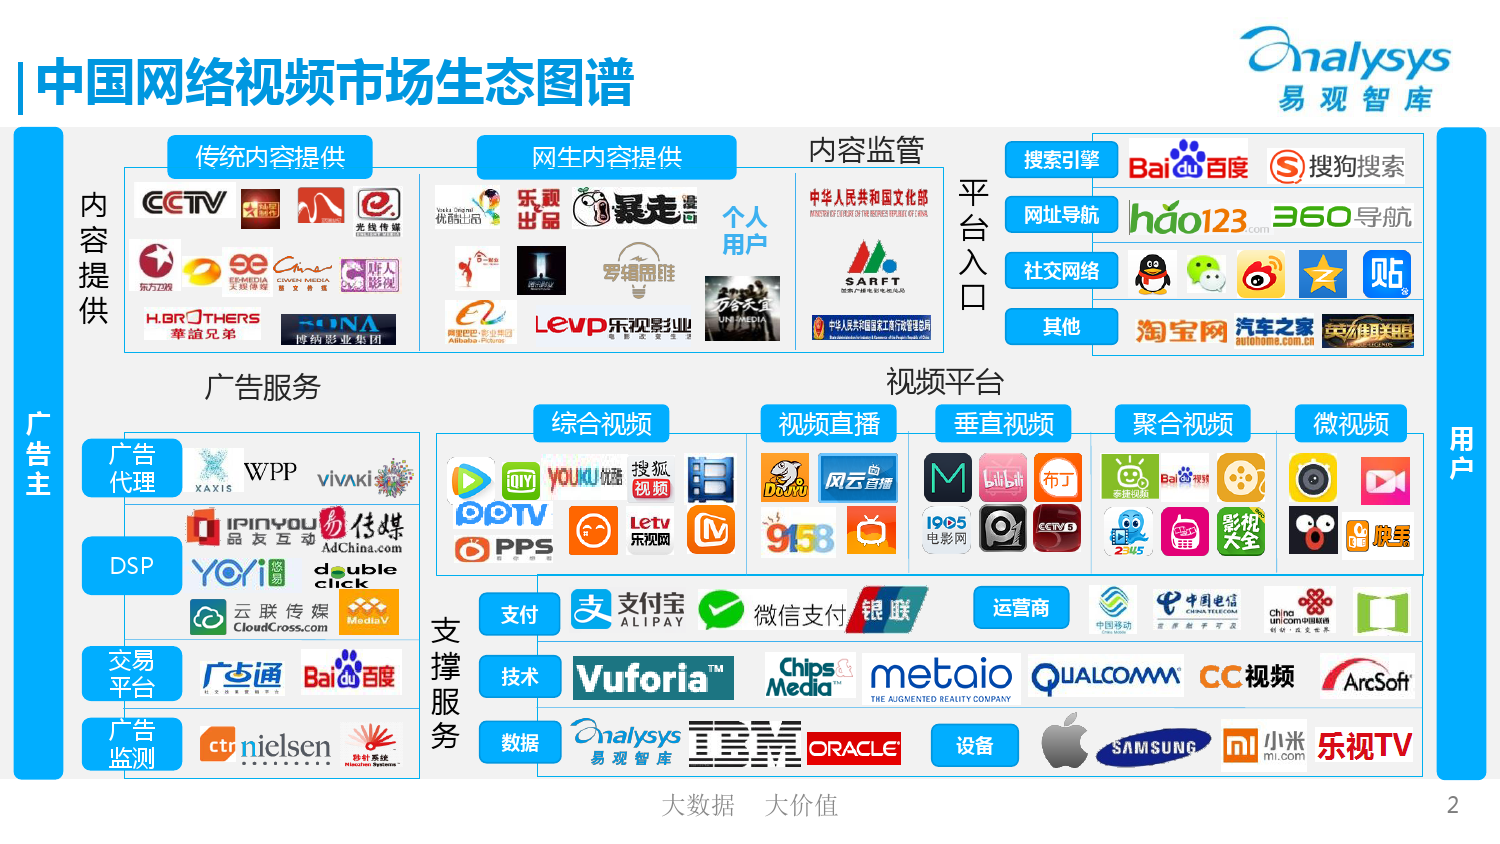 中国网络视频市场生态图谱2015 01_000002